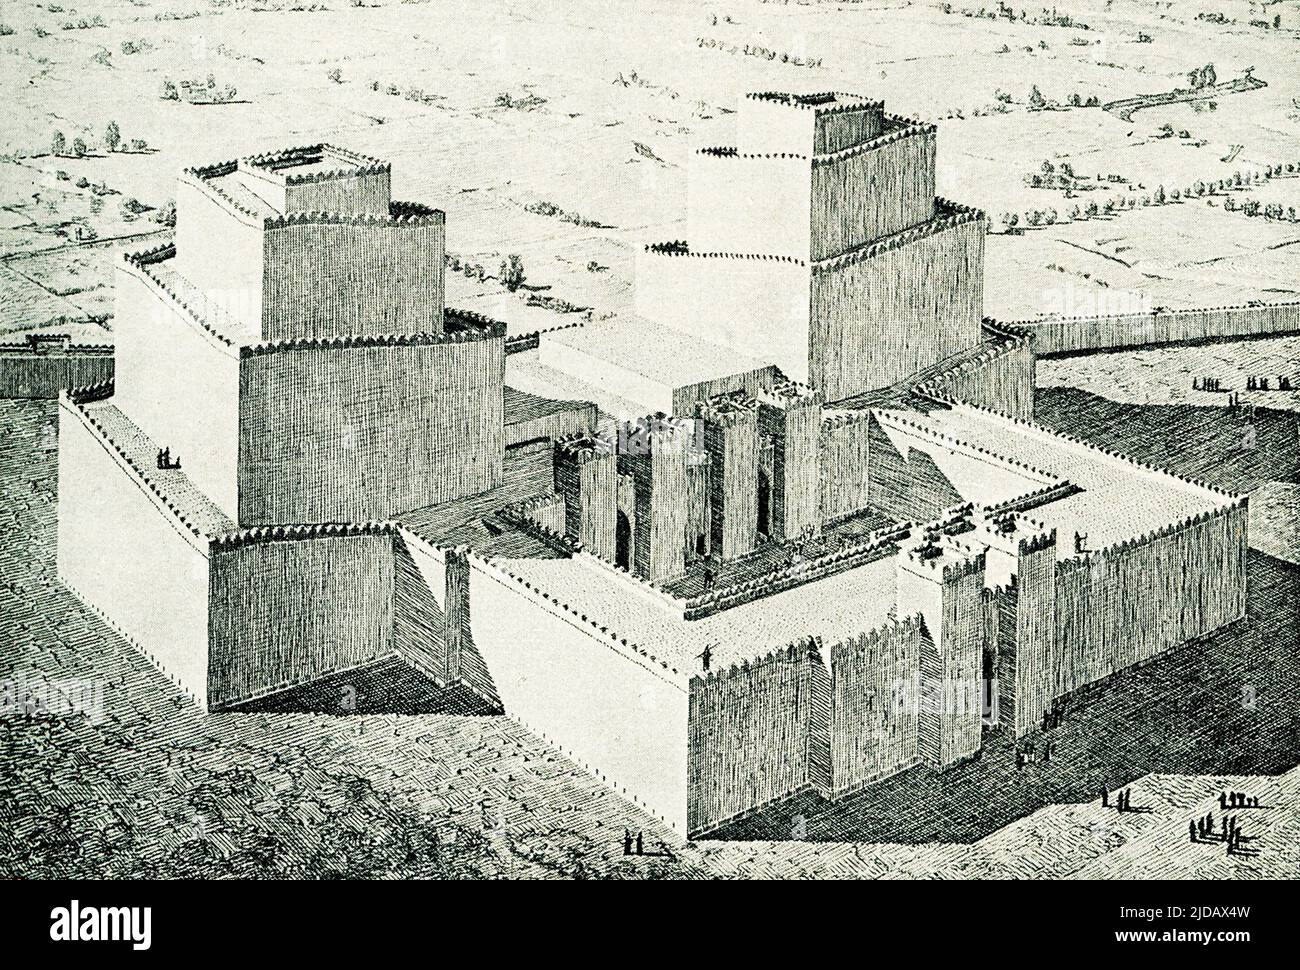 Aquí se muestra una vista reconstruida del ziggurat en Assur (también conocido como Ashur y Qal'at Sherqat), la capital del antiguo estado asirio, el Imperio asirio medio, y por un tiempo, del Imperio neo-asirio. El ziggurat fue dedicado al dios Assur, Assur estaba situado en el río Tigris en Mesopotamia (ahora al norte de Irak). Se remonta a unos 4.000 años. El ziggurat es la invención arquitectónica más distintiva del Antiguo Cercano Oriente. Como una antigua pirámide egipcia, un antiguo ziggurat del Cercano Oriente tiene cuatro lados y se eleva hasta el reino de los dioses. A diferencia de las pirámides egipcias, Th Foto de stock